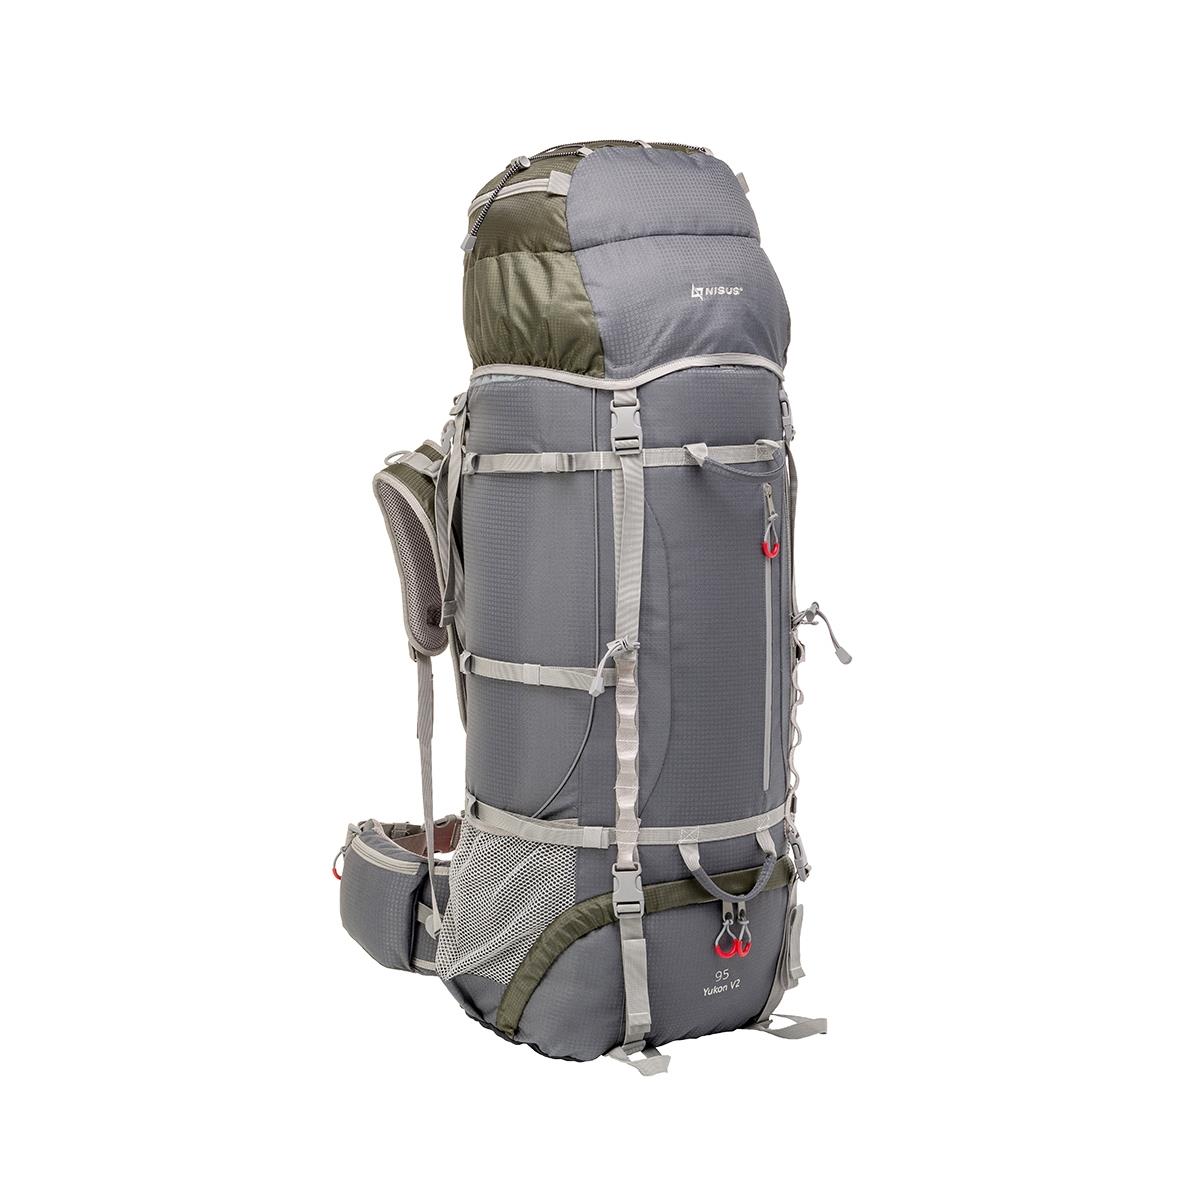 Рюкзак Юкон 95 Nisus сумка рюкзак с пеленальным ковриком серый